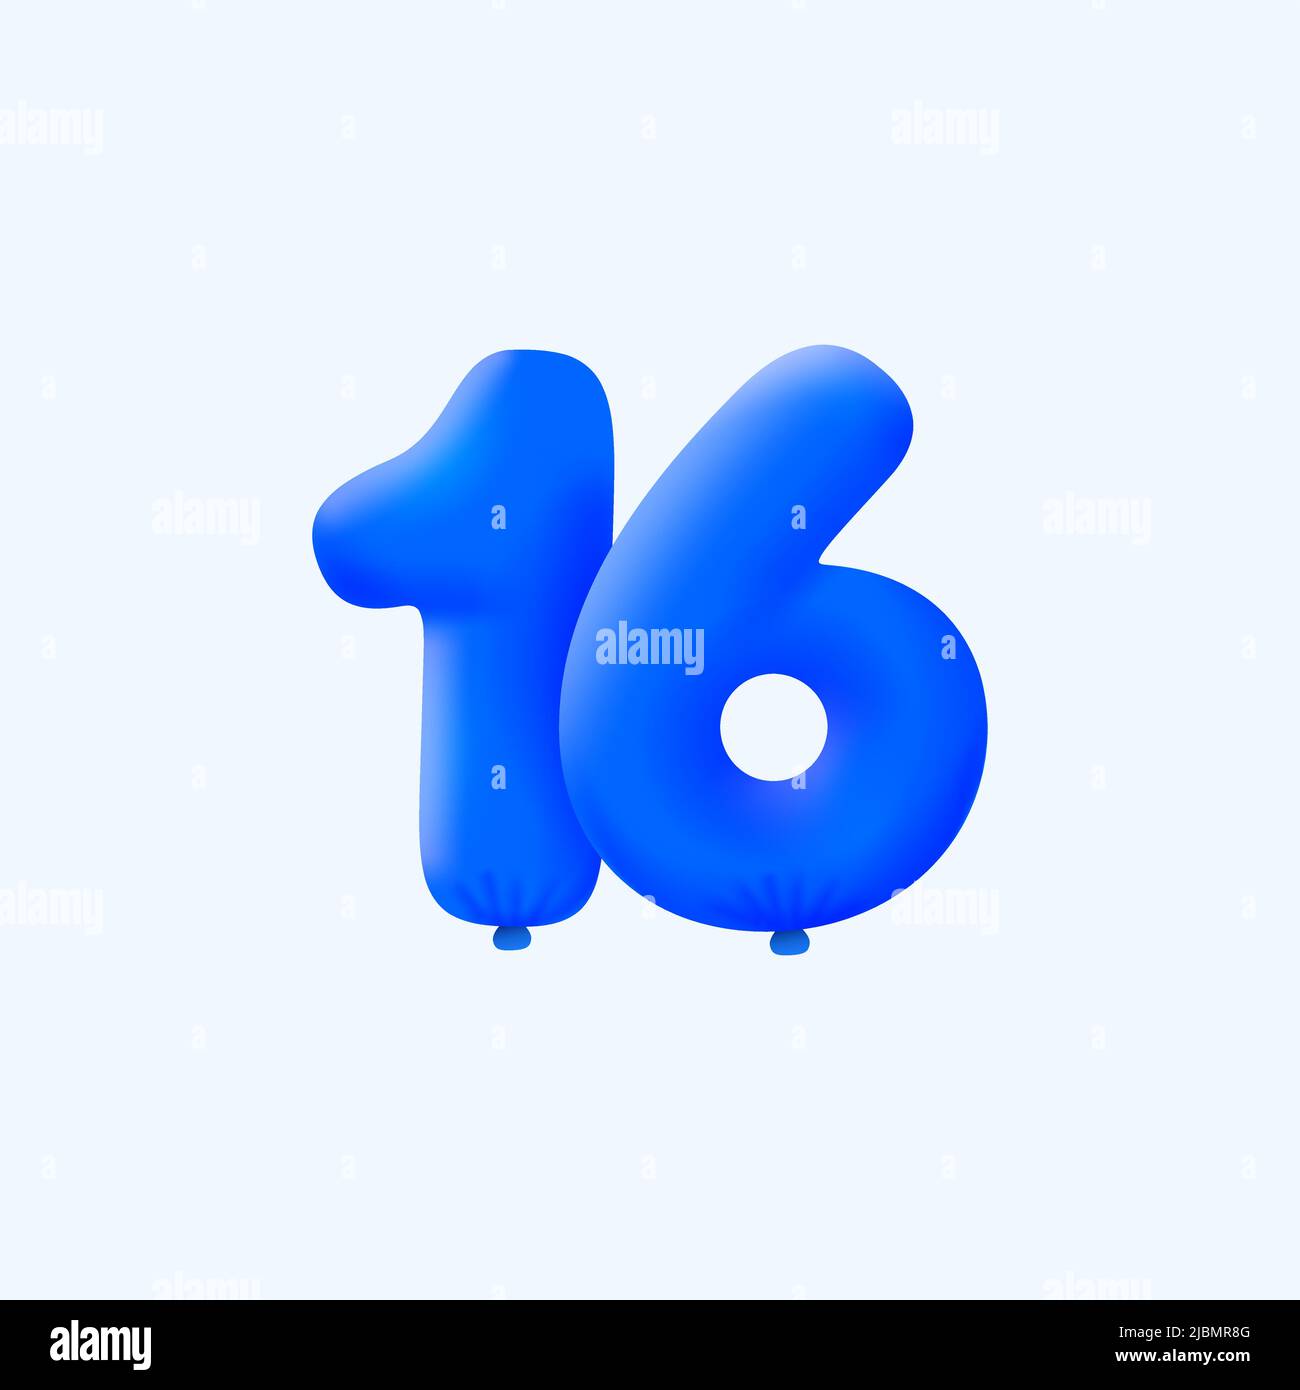 Blau 3D Zahl 16 Ballon realistisch 3D Helium blaue Ballons. Vektor-Illustration-Design Party-Dekoration, Geburtstag, Jubiläum, Weihnachten, Weihnachten, Neujahr, Urlaub Verkauf, Feier, Karneval, aufblasbar Stock Vektor